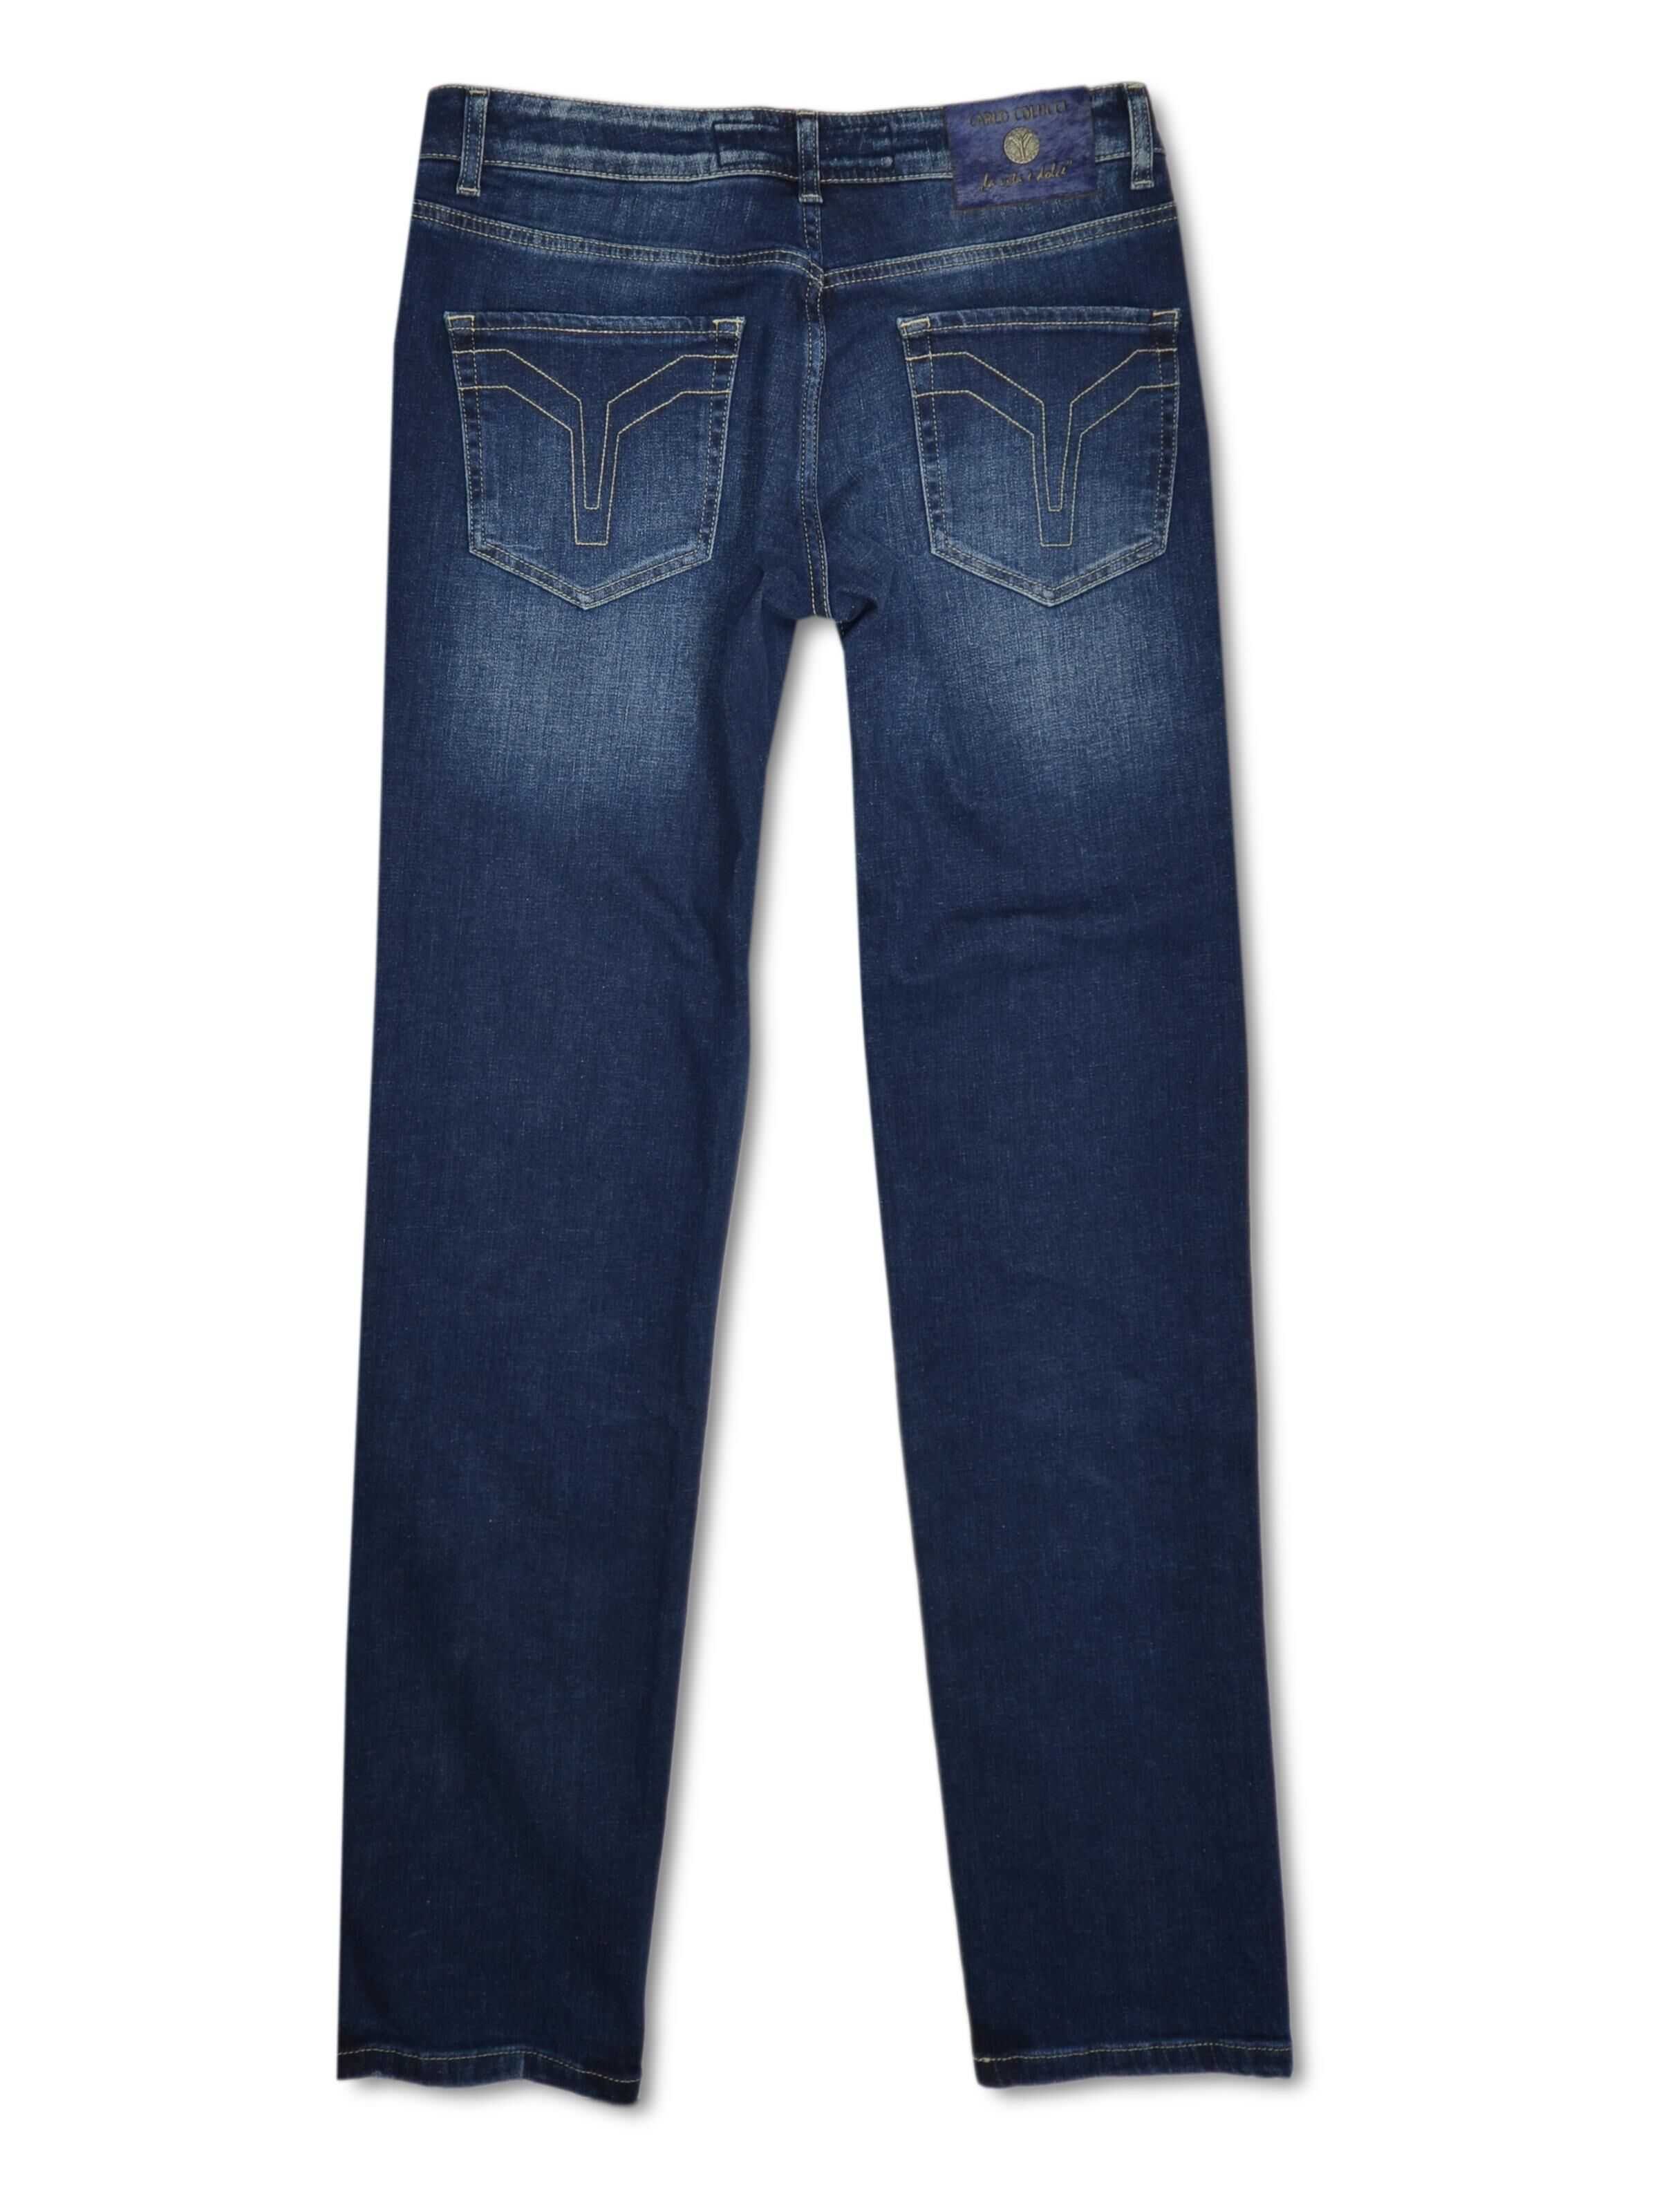 5-Pocket Jeans Milano